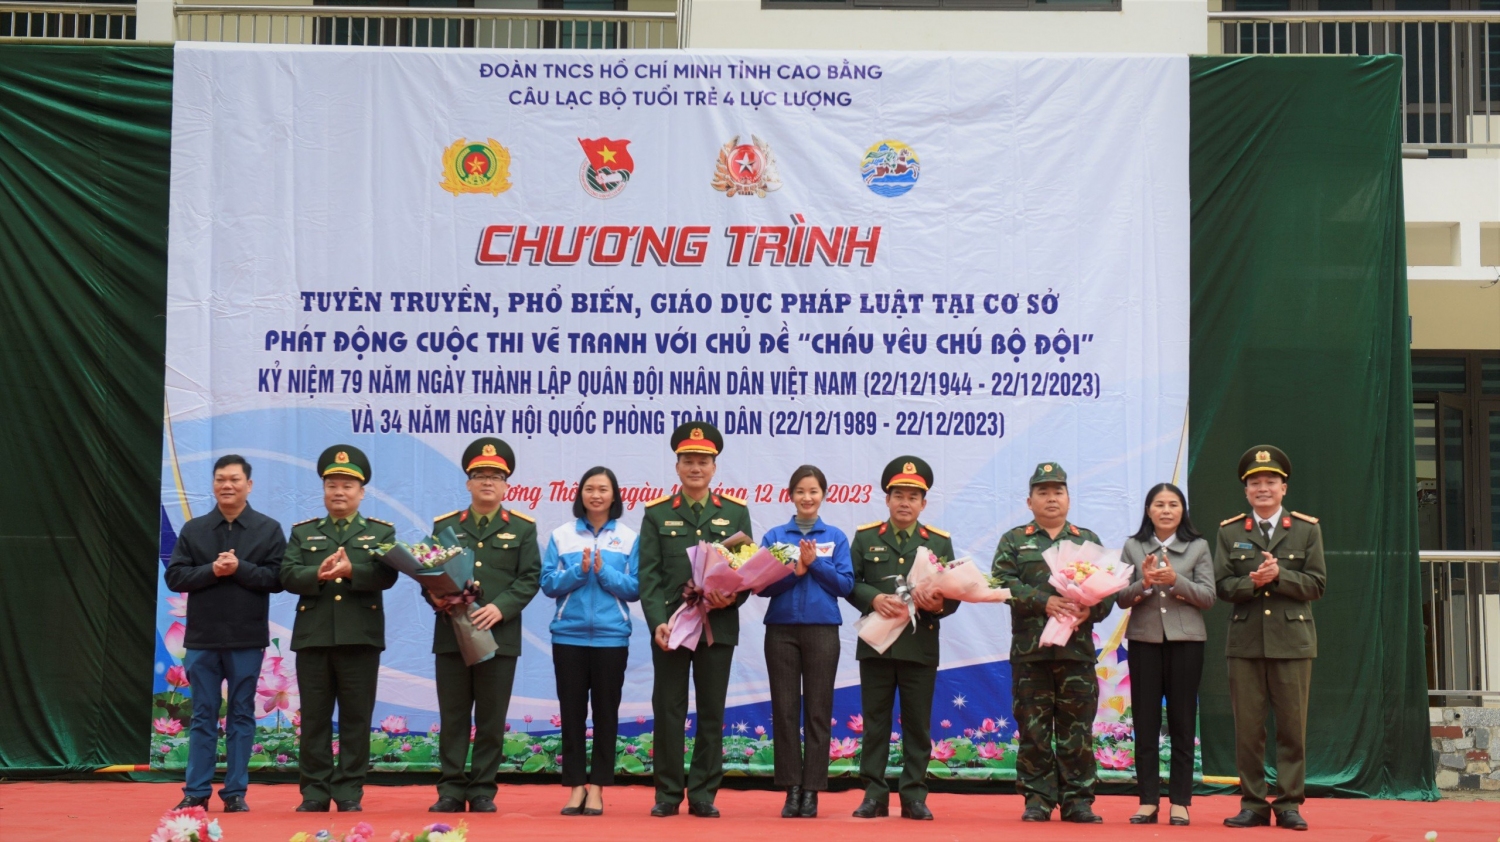 Ban chủ nhiệm CLB tặng hoa chúc mừng Ngày thành lập QĐND Việt Nam.